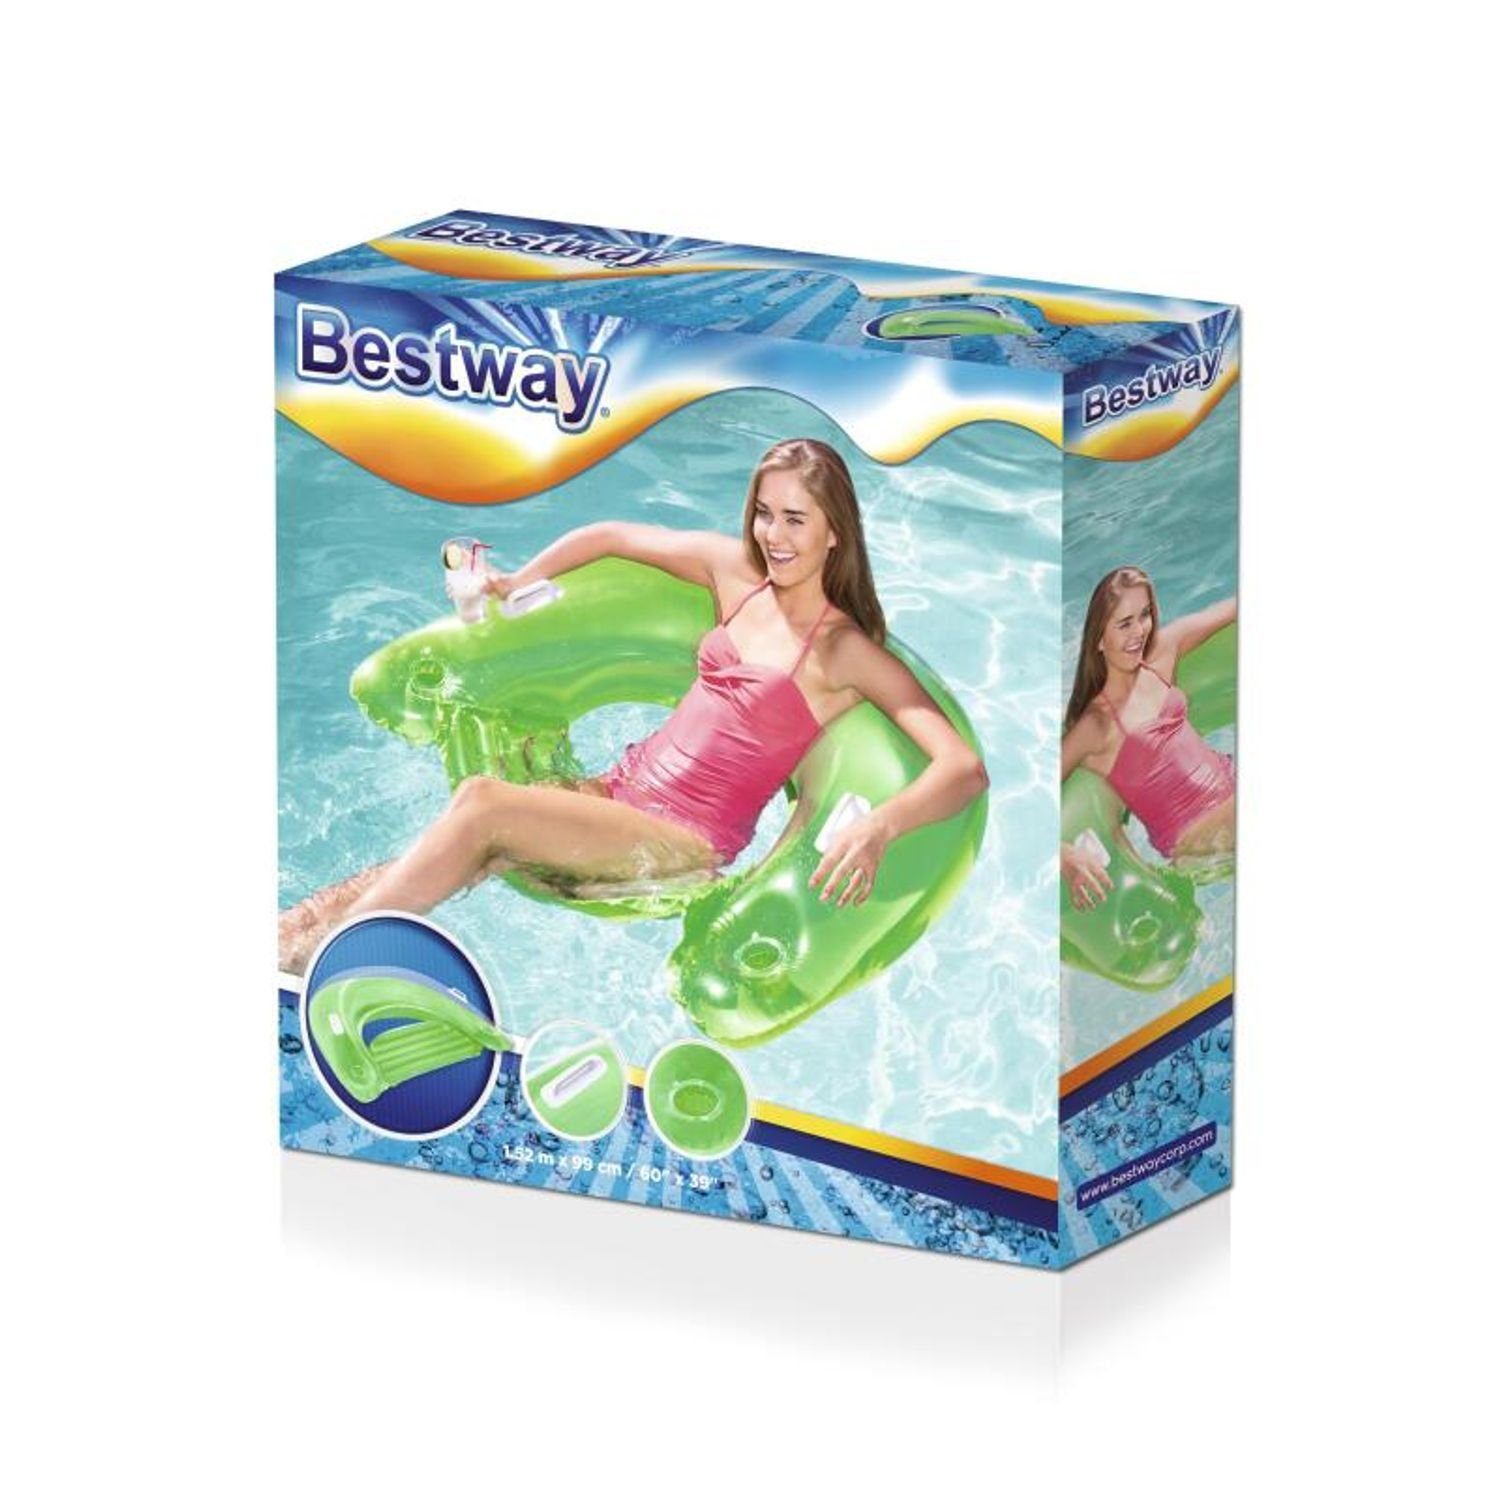 Schwimmsitz Poolmatte Bestway Luftmatratze Bestway Lazy Lounge Wasserliege Folienballon